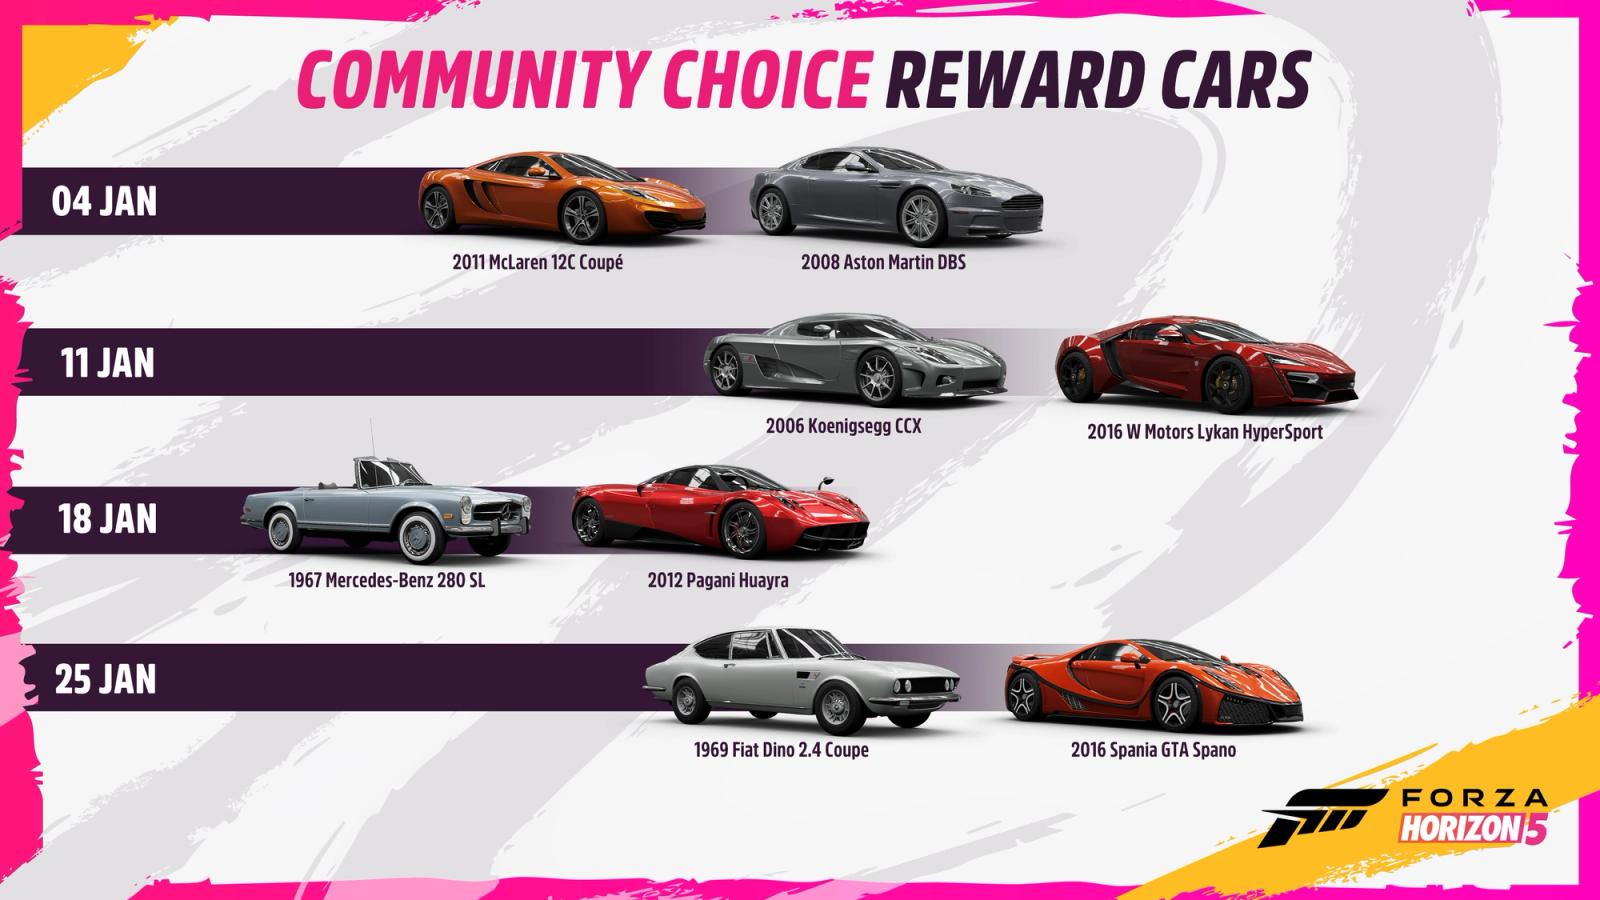 Forza Horizon 5 Community Choice reward cars